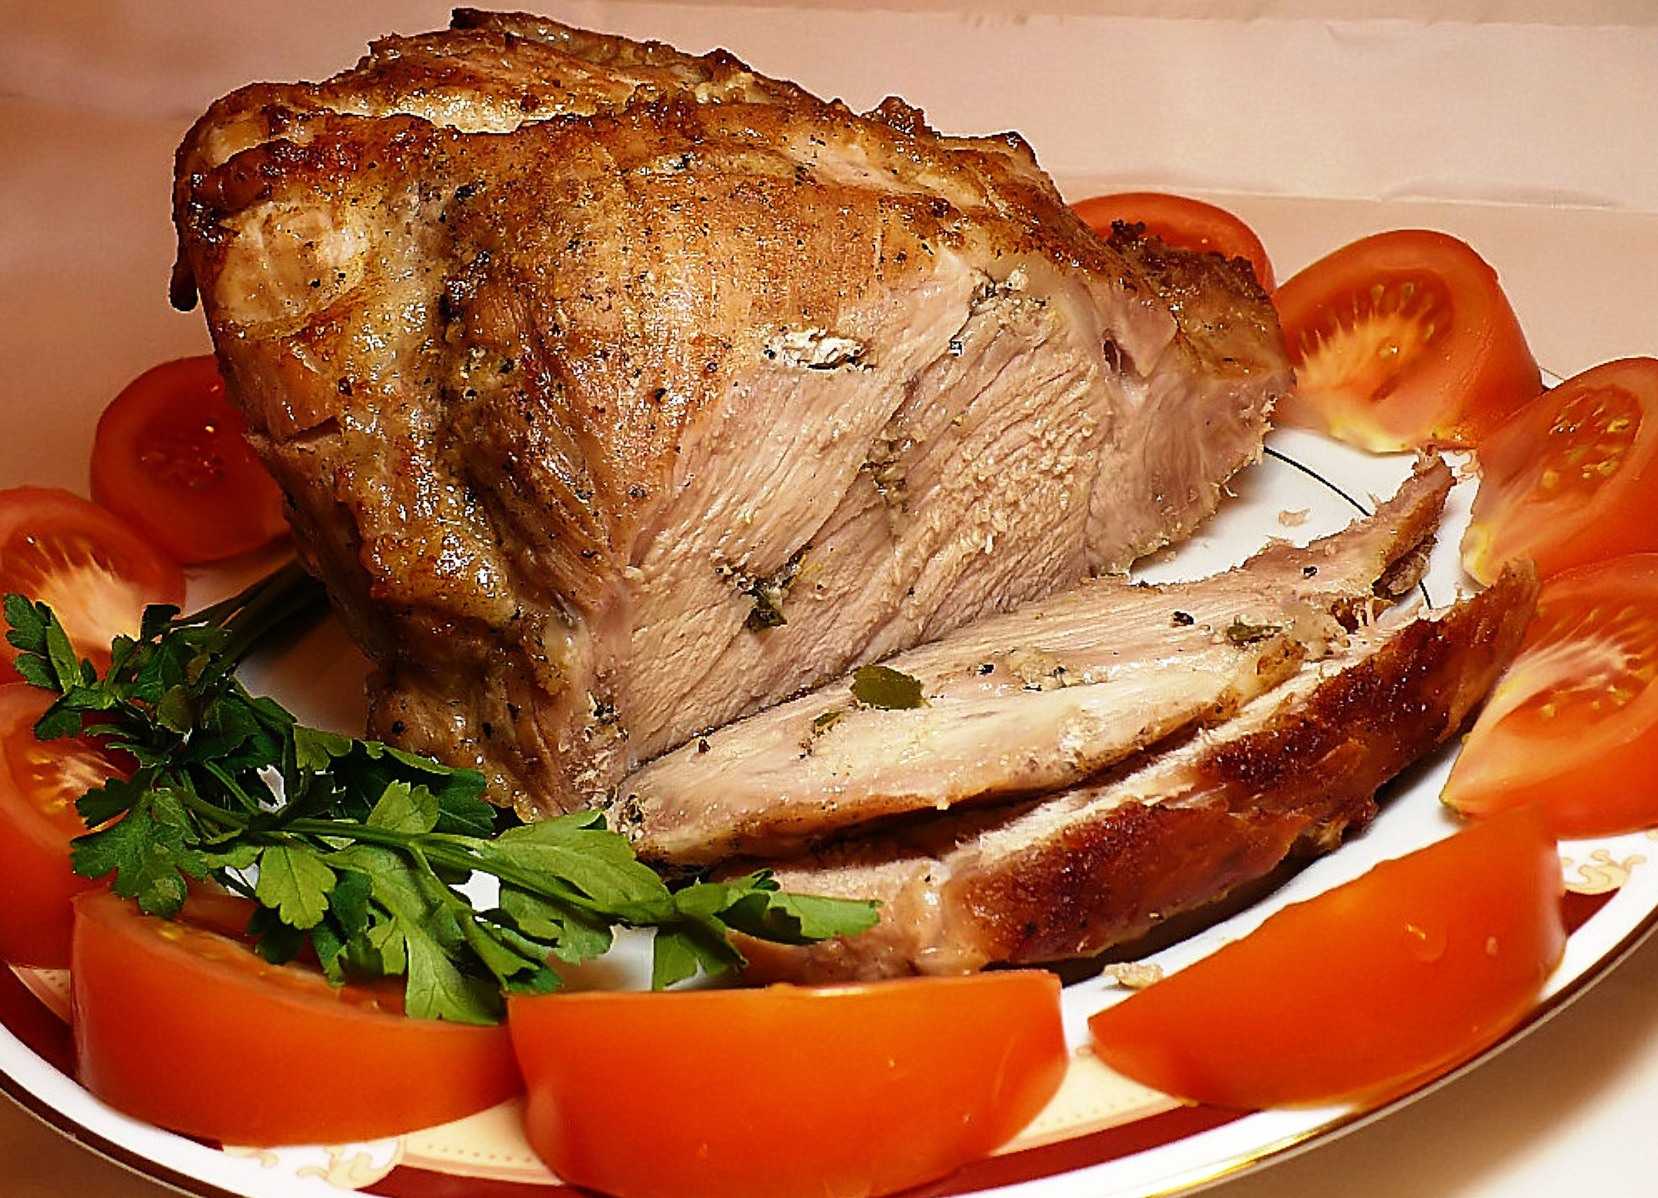 Буженина в мультиварке из свинины и говядины: рецепты приготовления в фольге